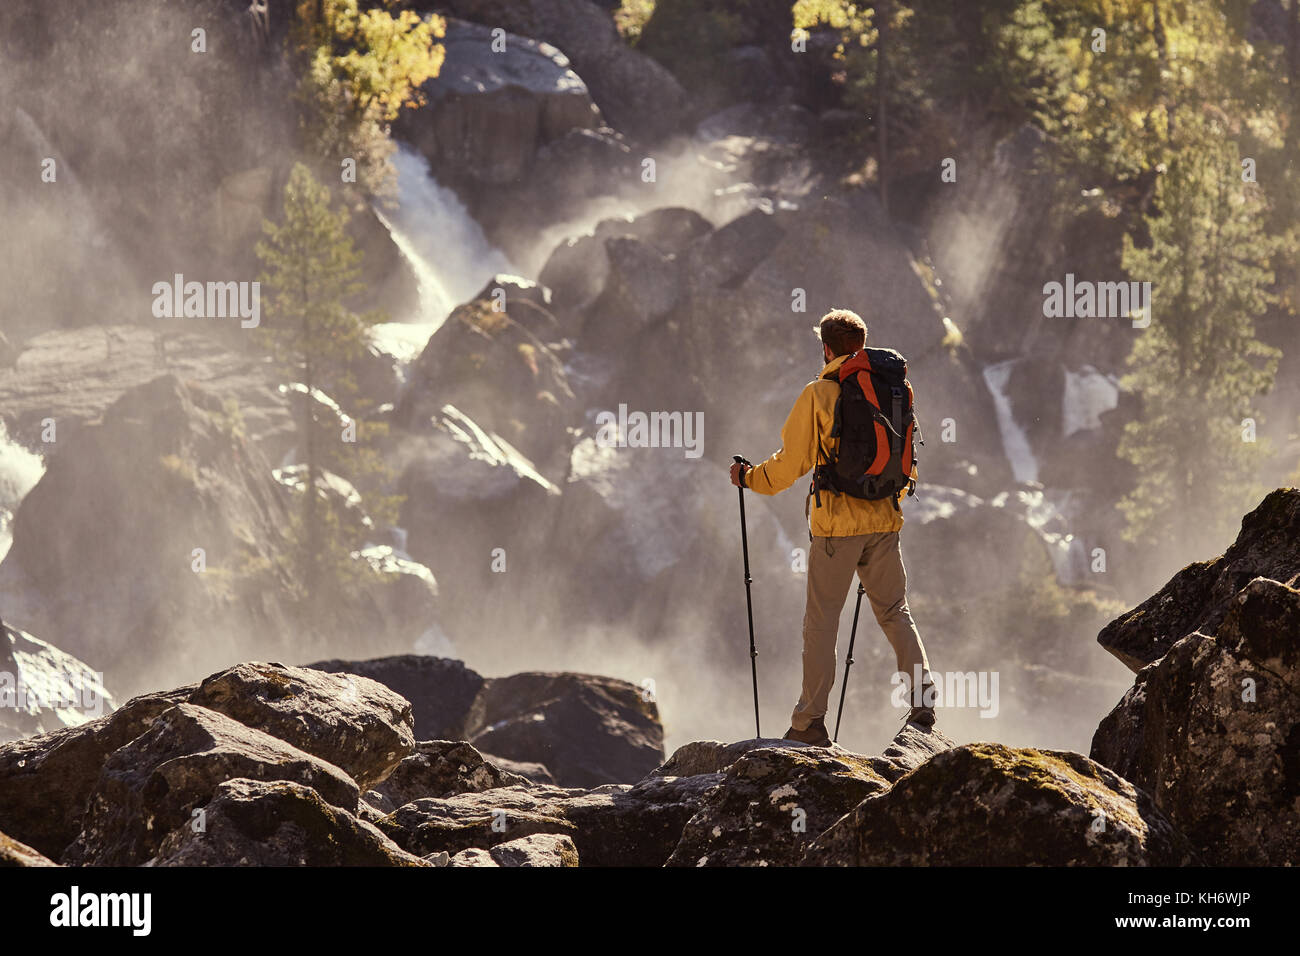 Escursionista escursionismo con zaino guardando la cascata nel parco in bella estate natura paesaggio. ritratto del maschio adulto torna in piedi all'aperto. Foto Stock